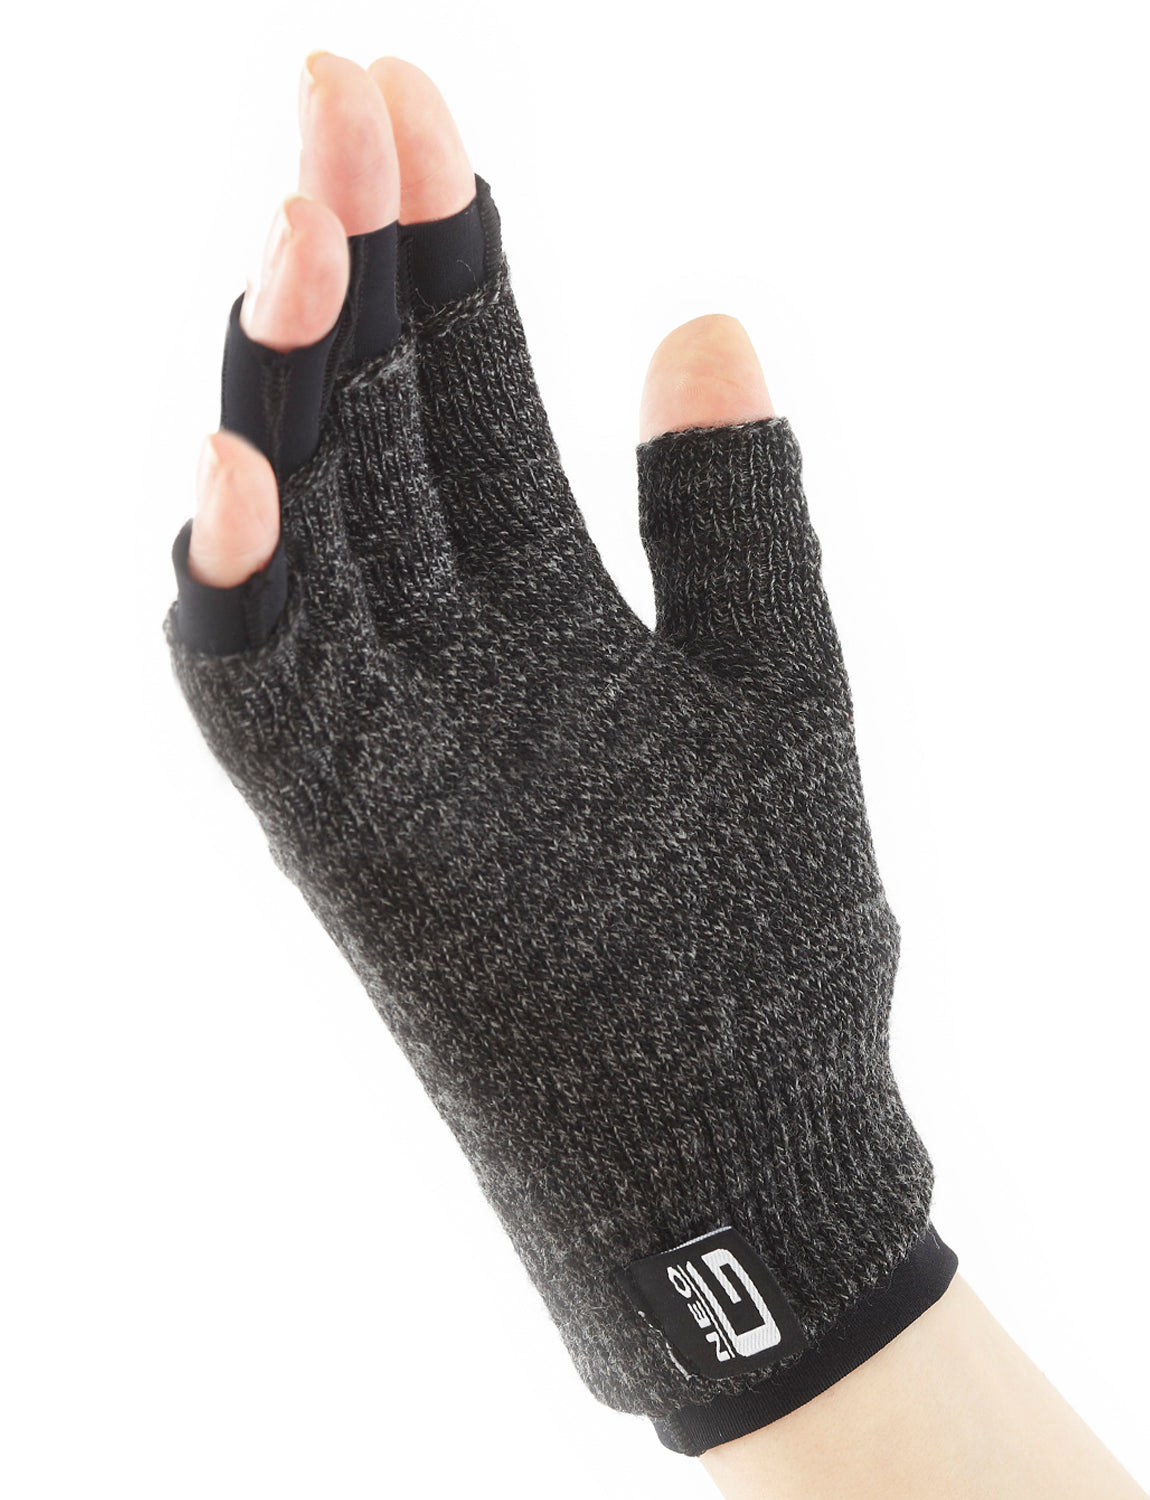 Comfort/Relief Arthritis Gloves